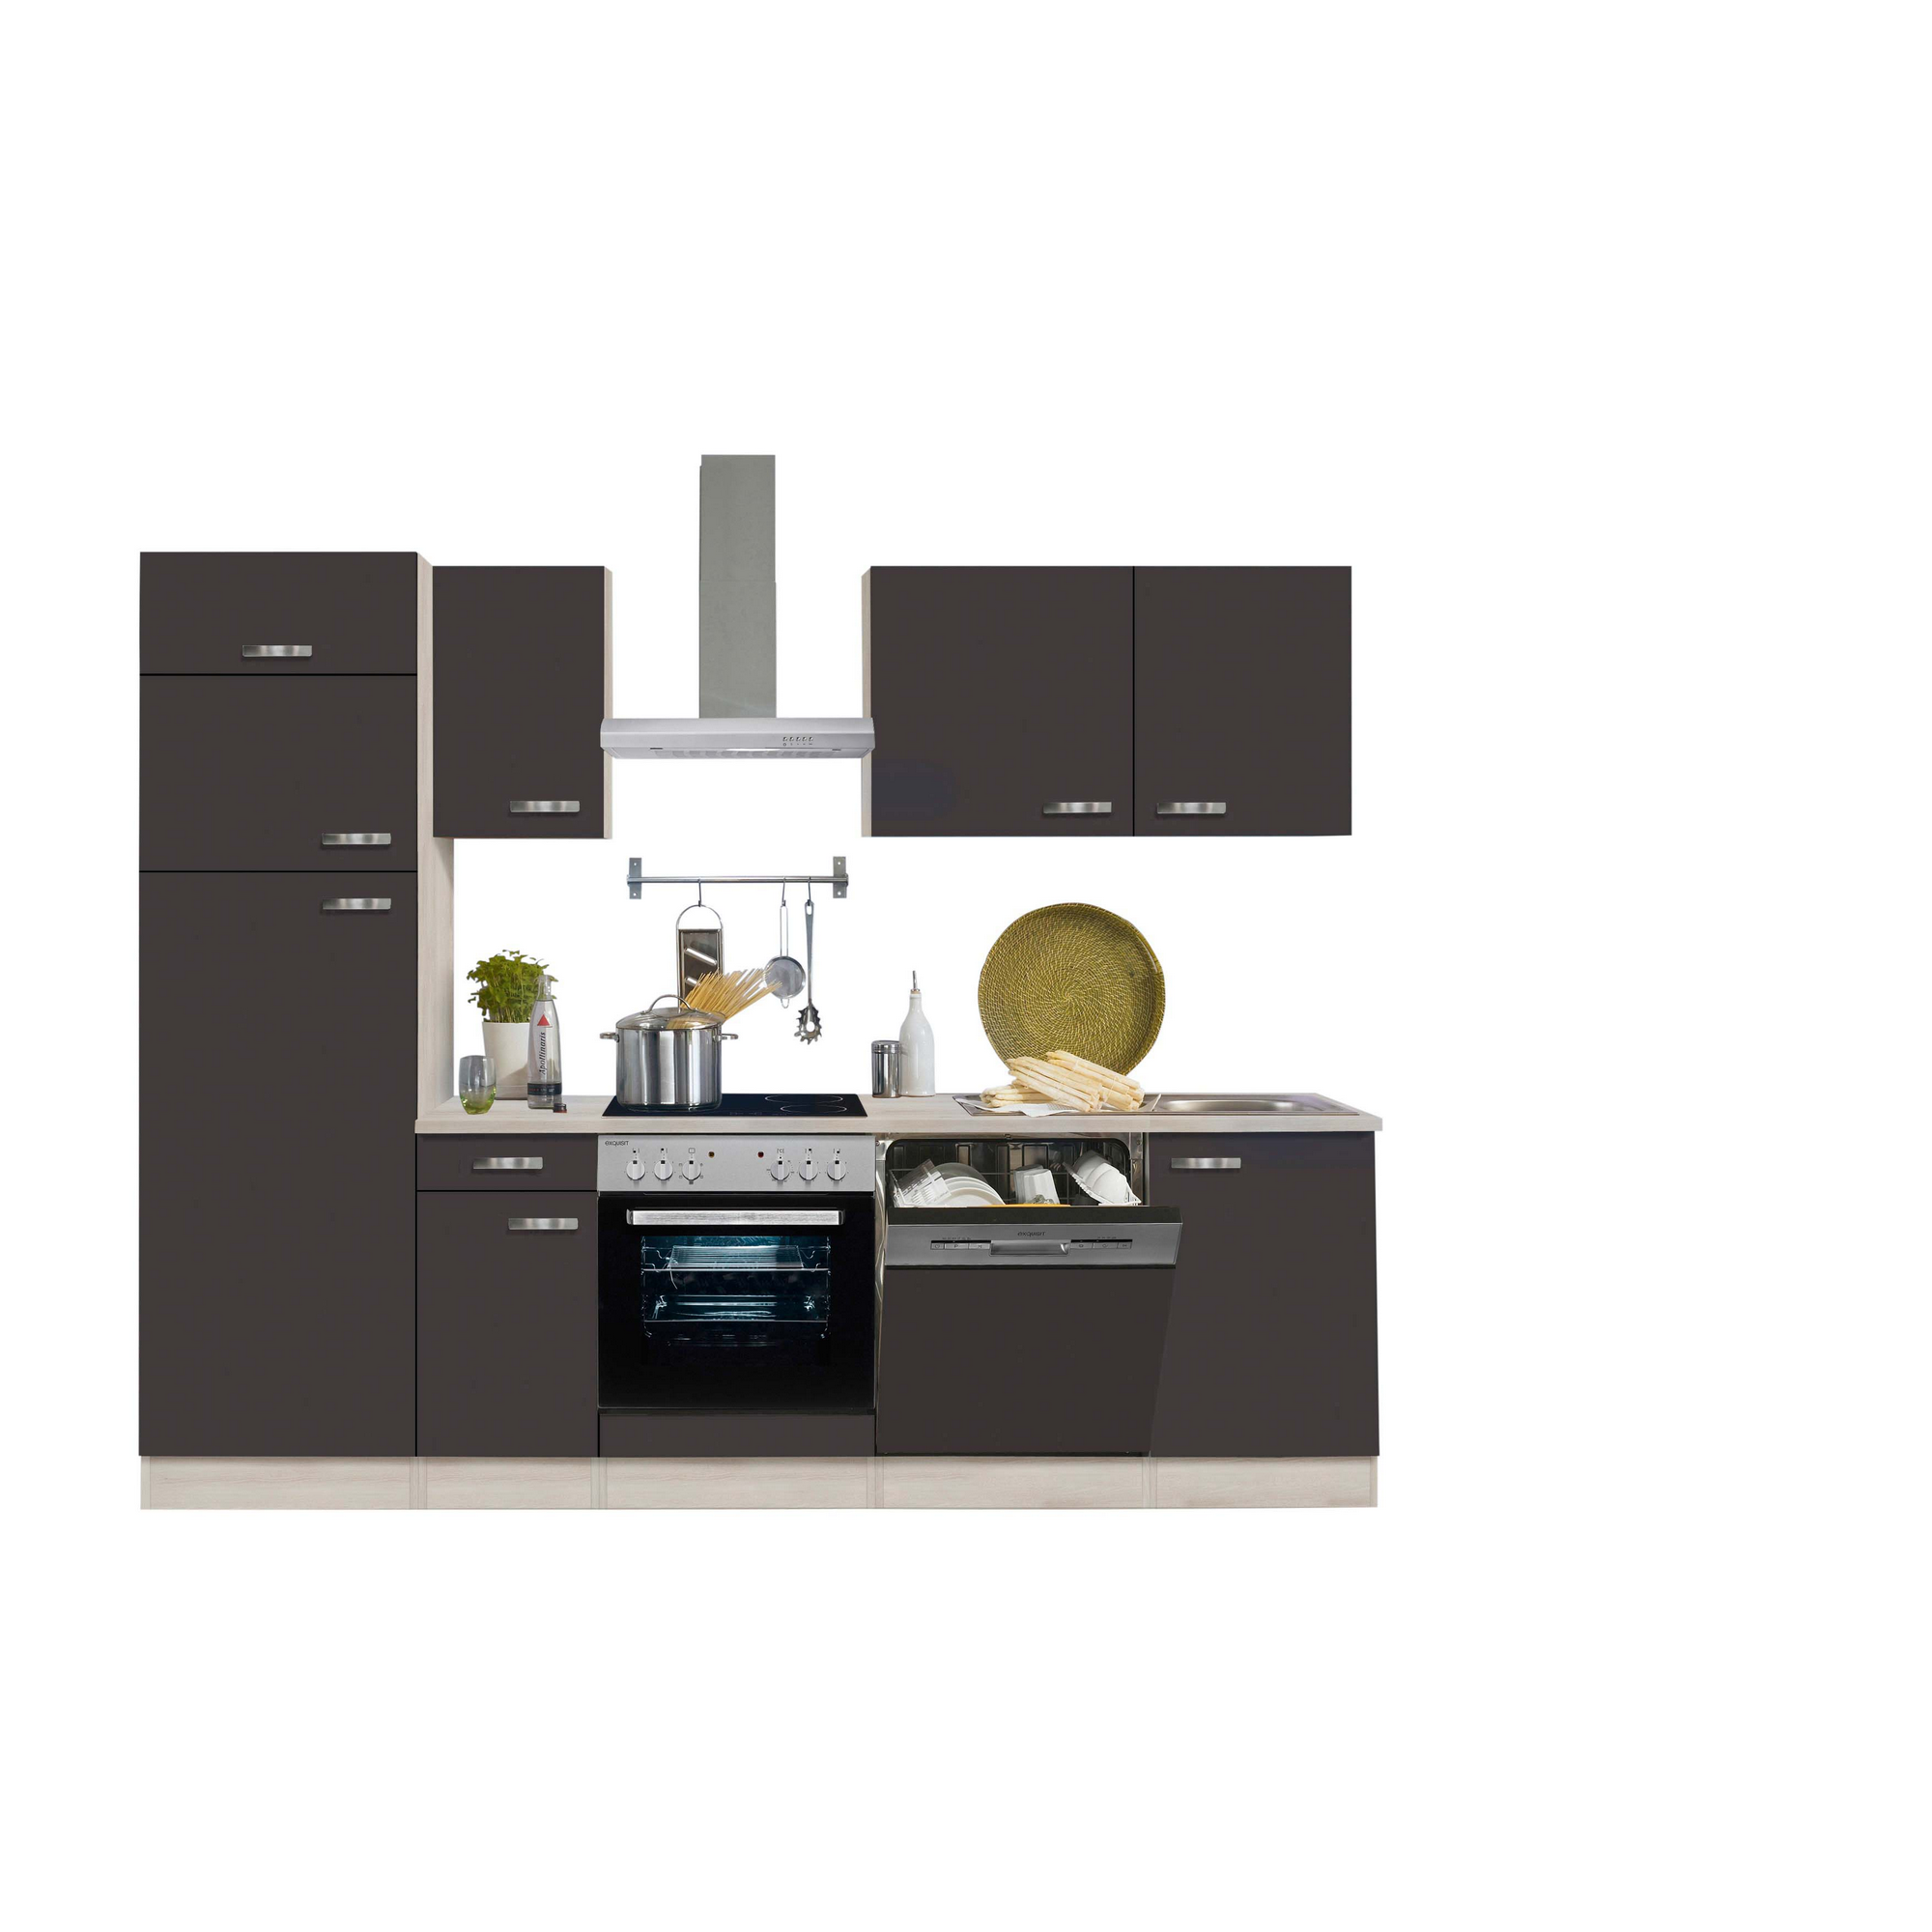 Küchenzeile mit E-Geräten 'OPTIkompakt Faro' anthrazit/akaziefarben 270 cm + product picture